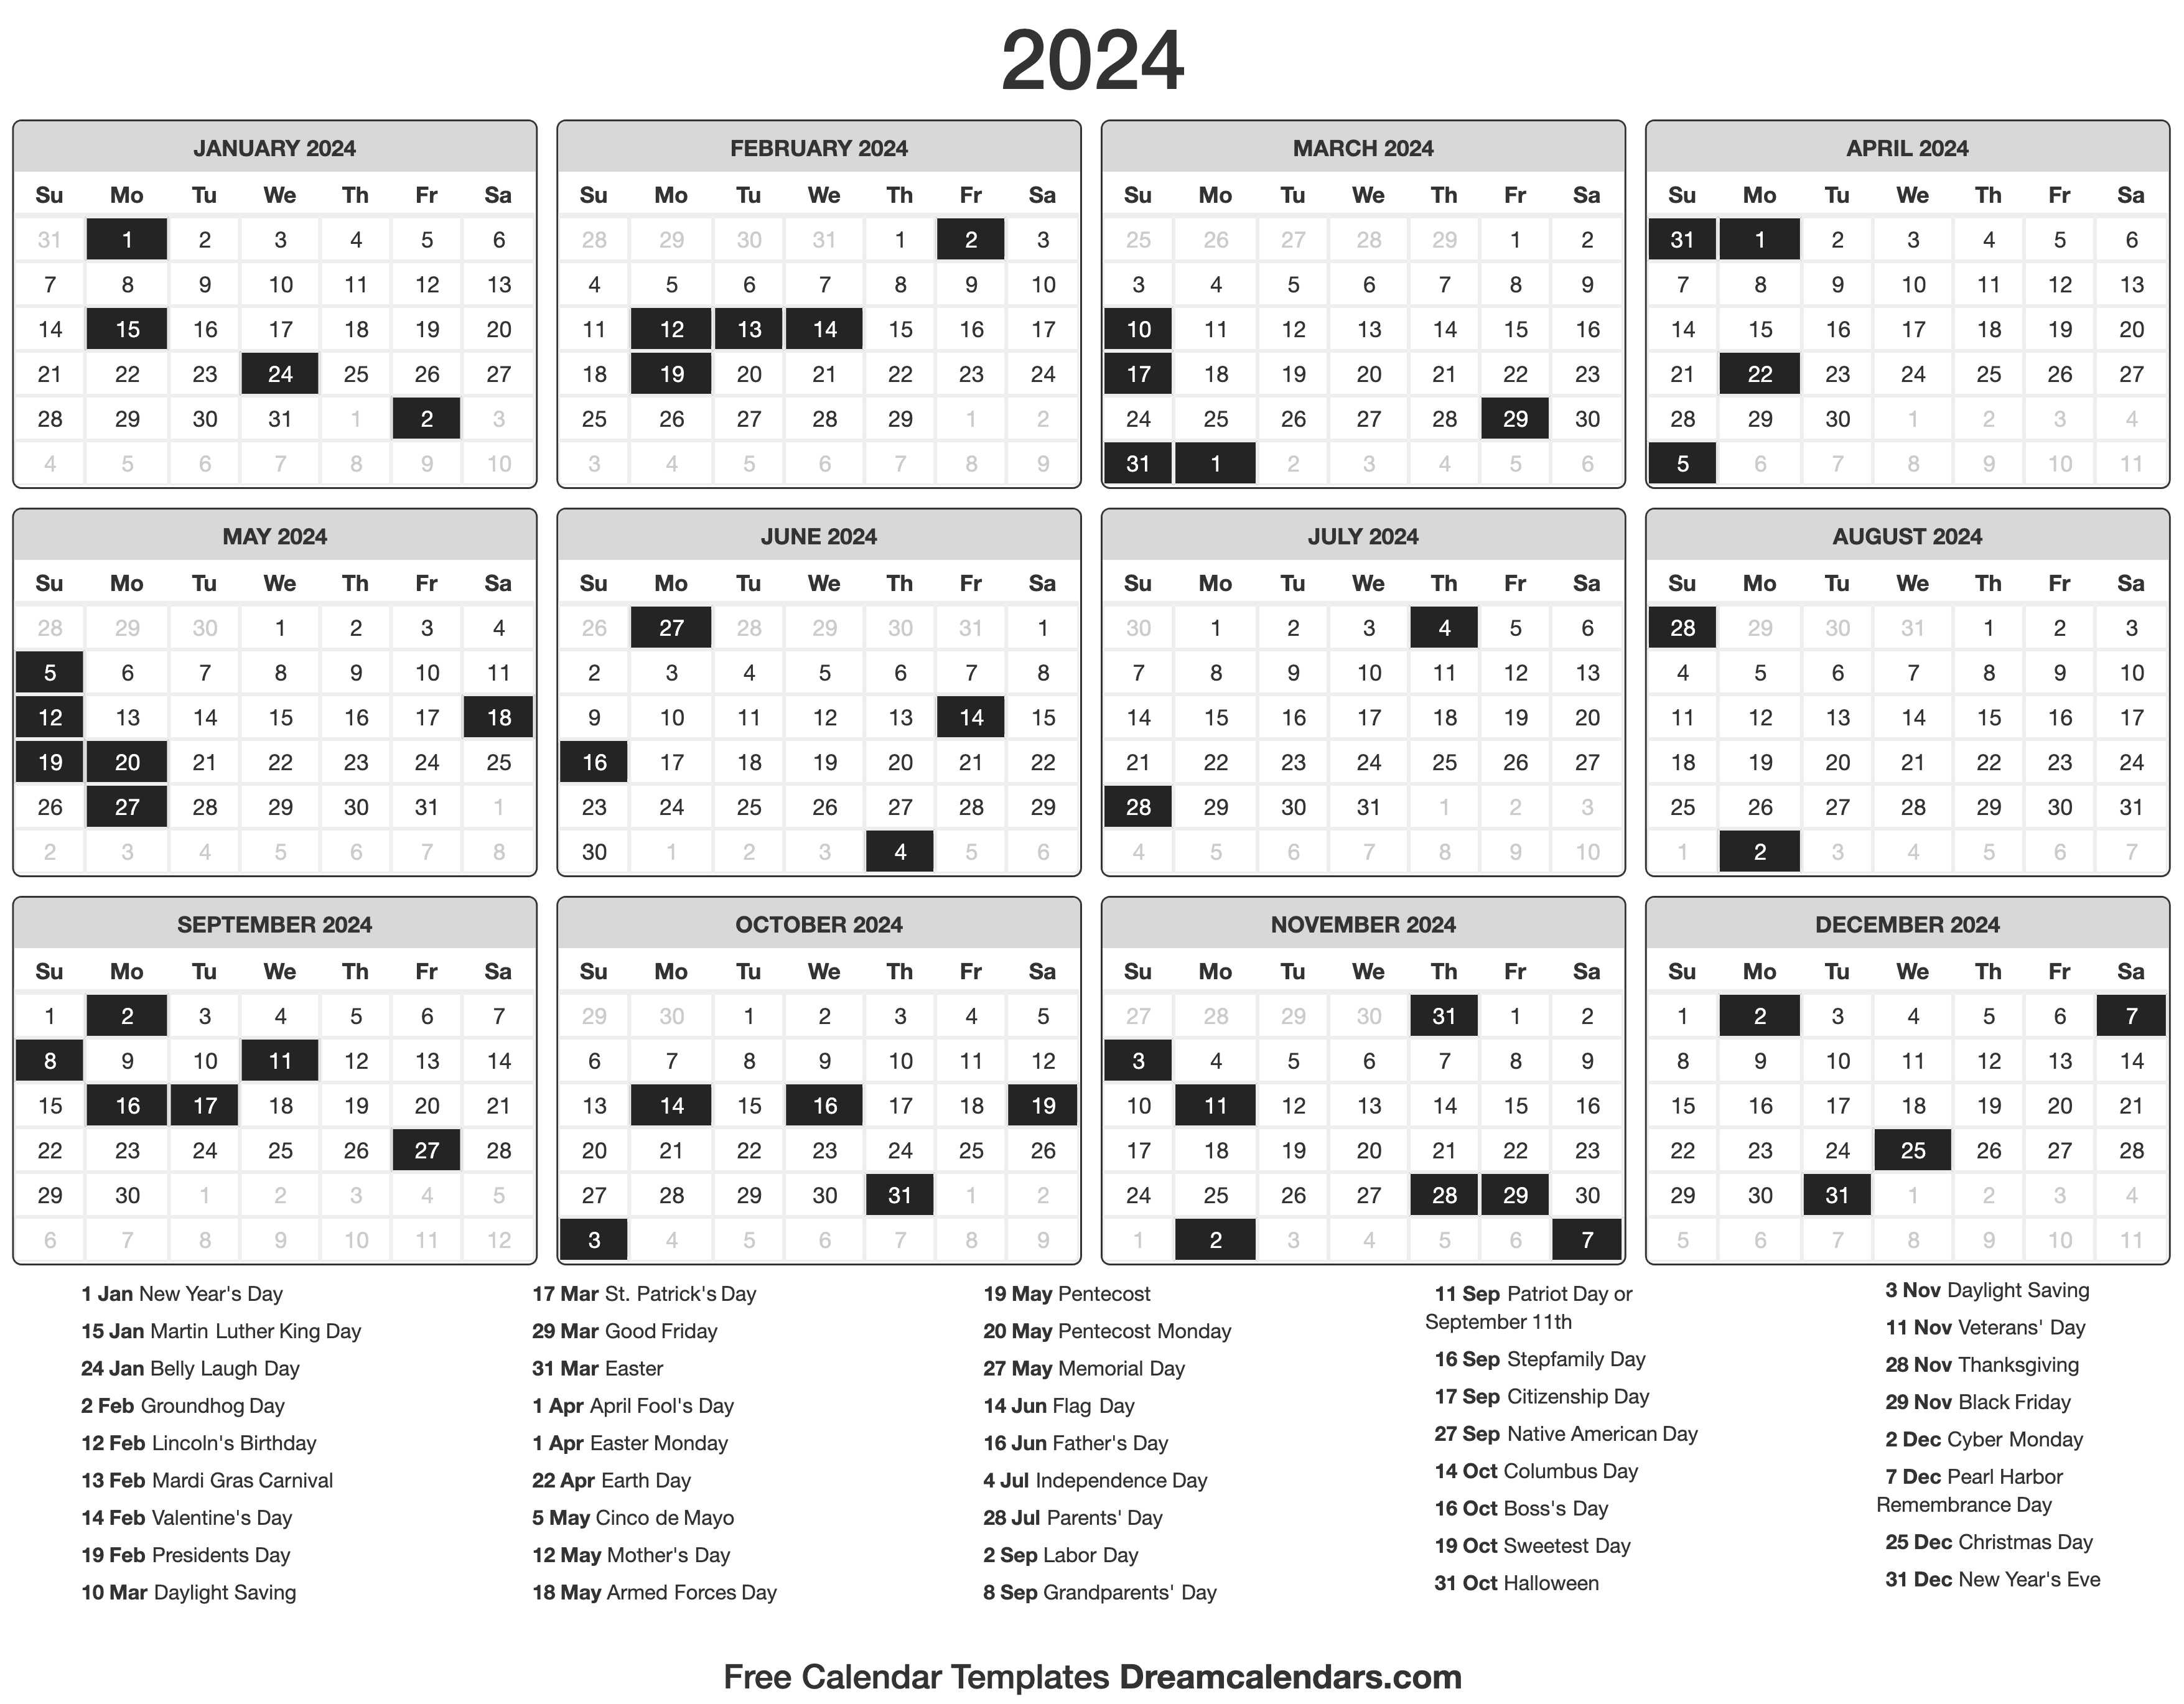 2024 calendar usa bimcal 2024 calendar templates and images 2024 us